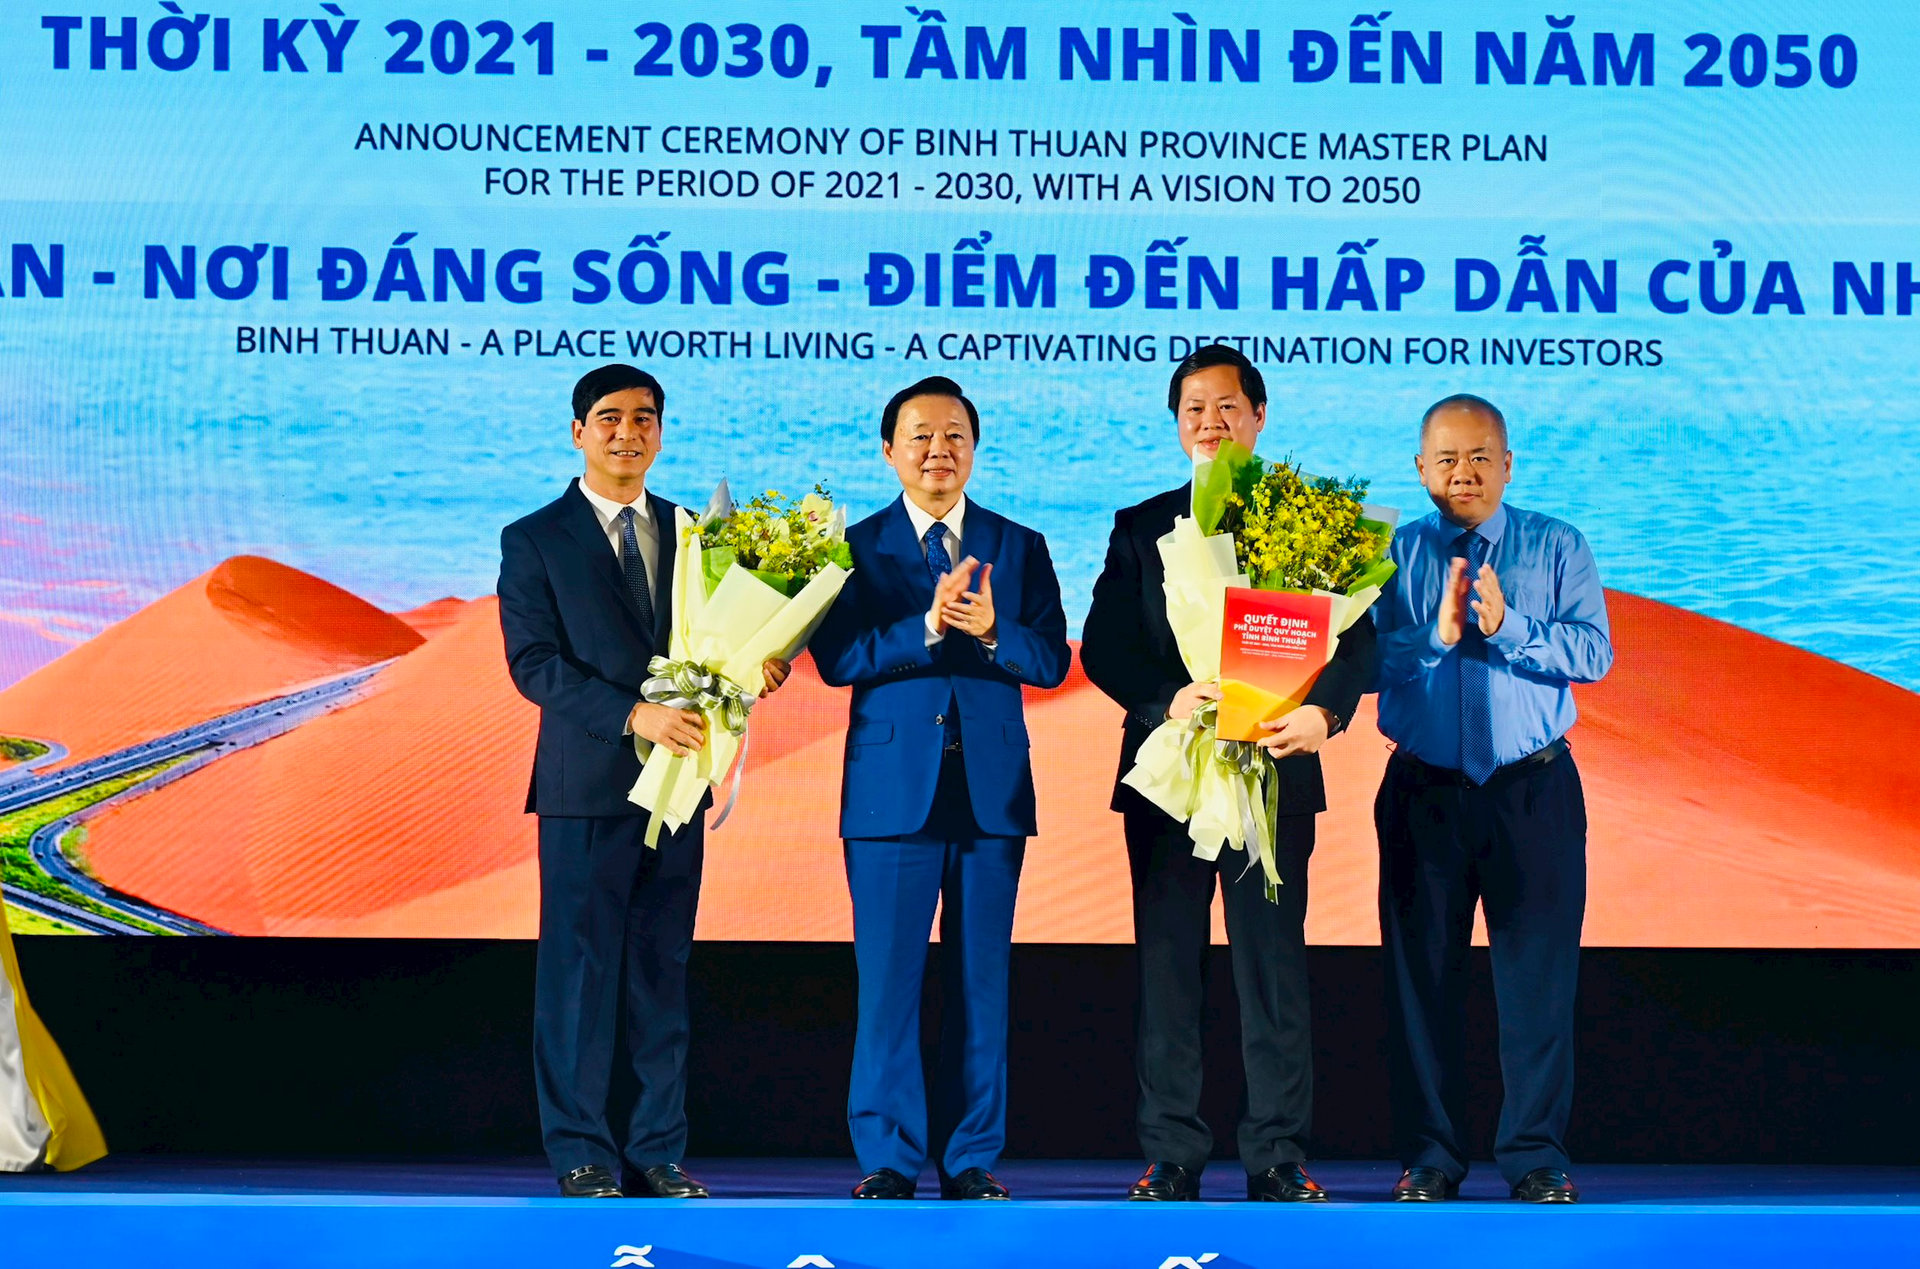 Phó Thủ tướng Trần Hồng Hà trao Quyết định Quy hoạch tỉnh Bình Thuận thời kỳ 2021 - 2030, tầm nhìn đến năm 2050 cho lãnh đạo địa phương